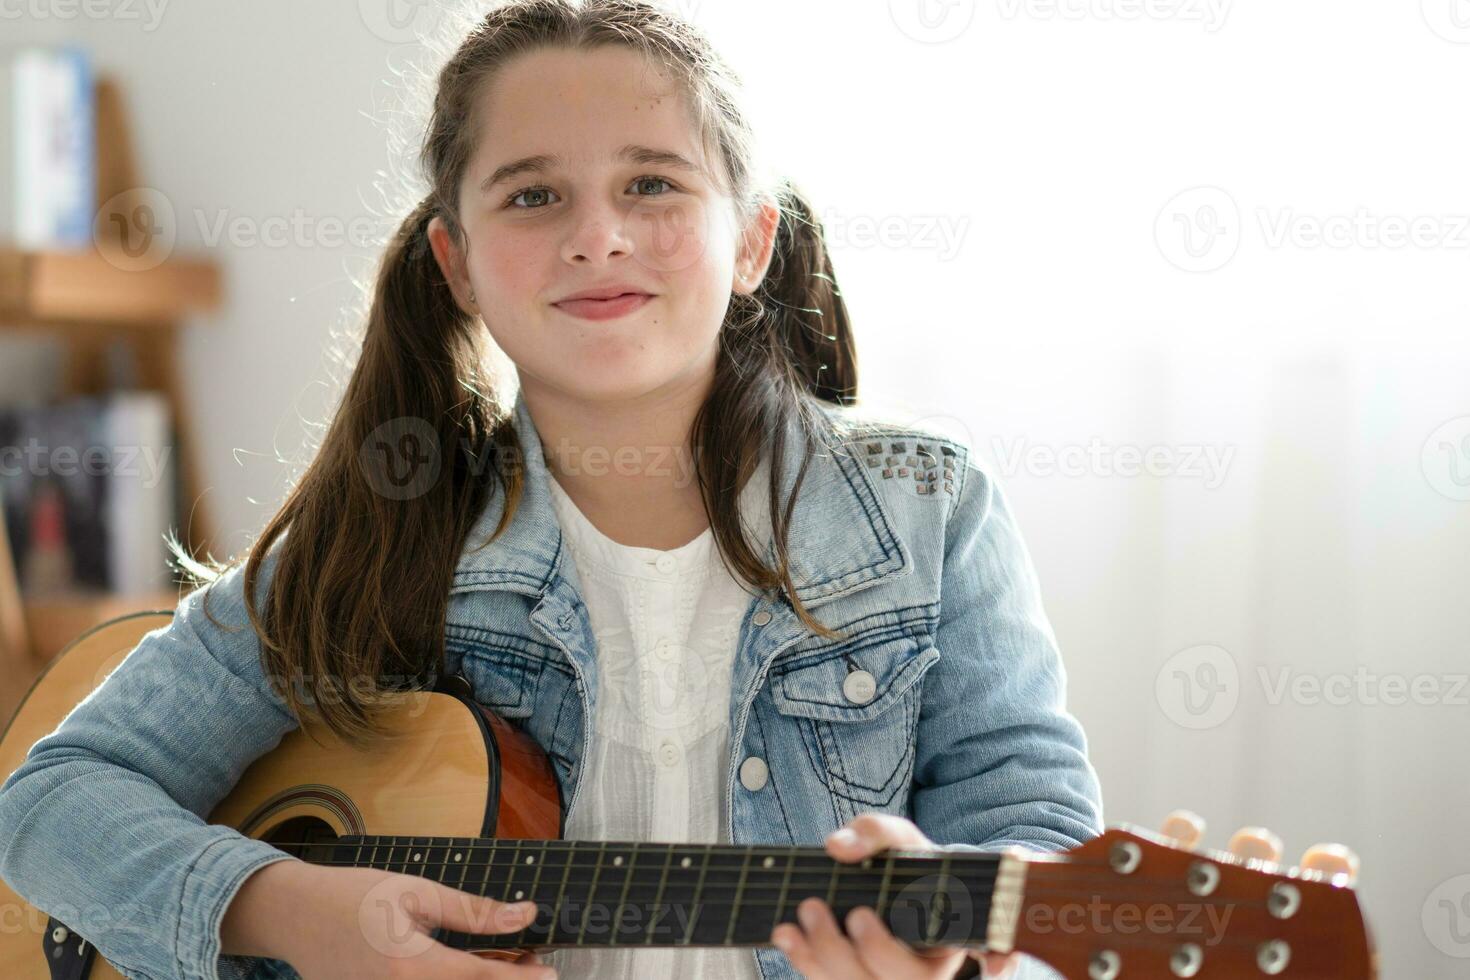 niña jugando guitarra relajarse en el dormitorio, disfrutar ocio fin de semana a hogar. libre de estrés concepto linda interpolación niña foto